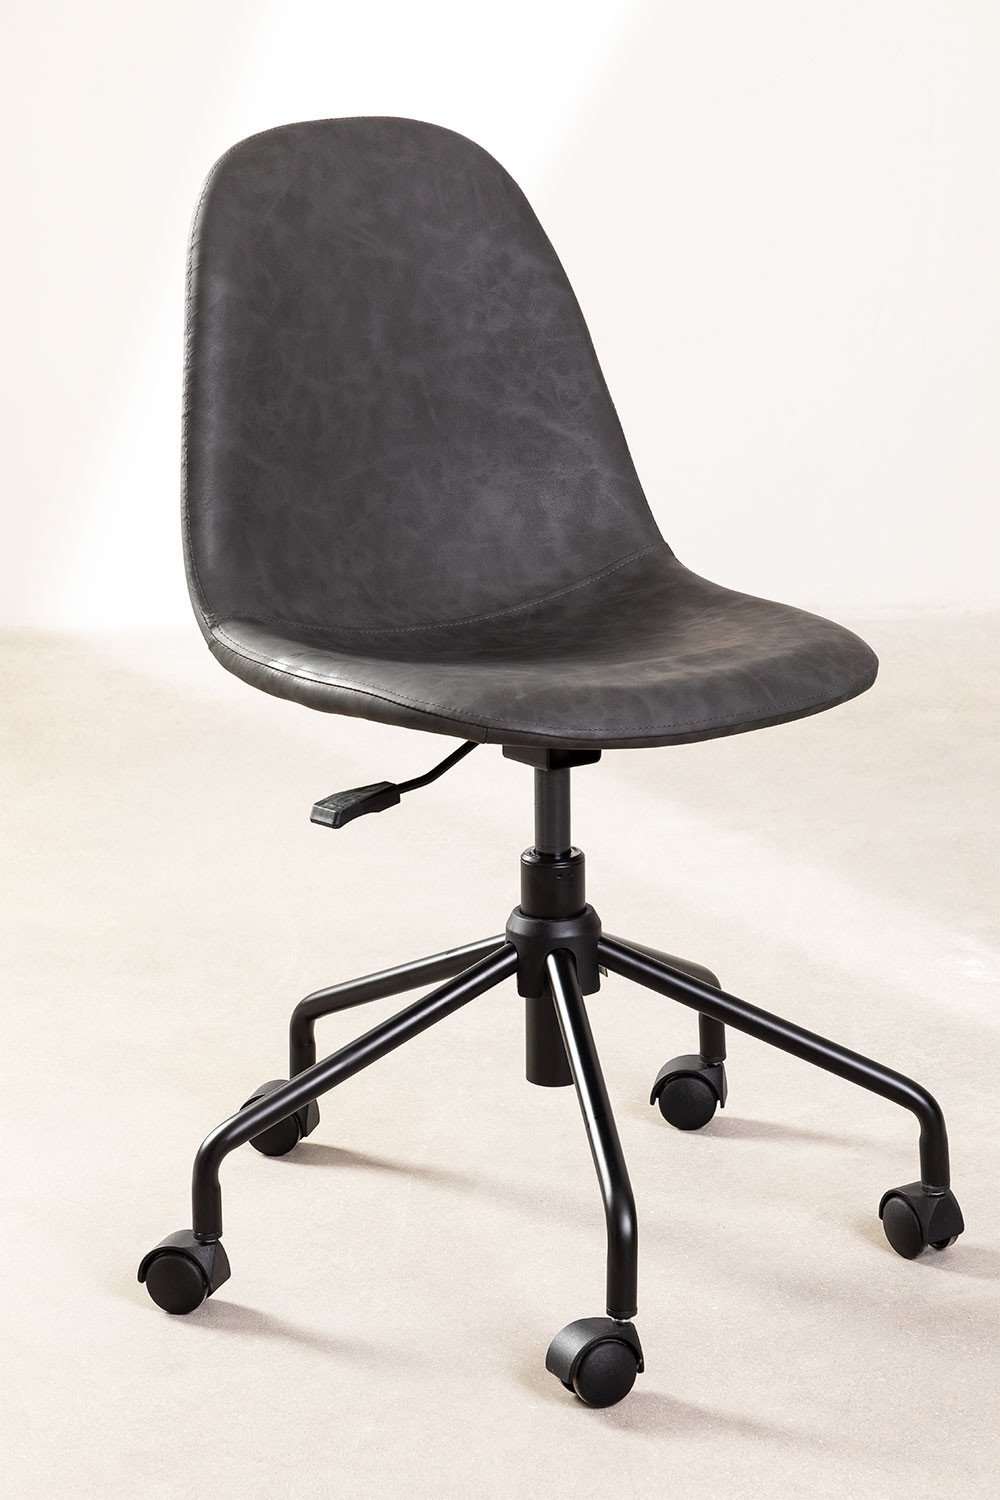 Krzeslo Biurowe ze Sztucznej Skóry Glamm, obrazek w galerii 1